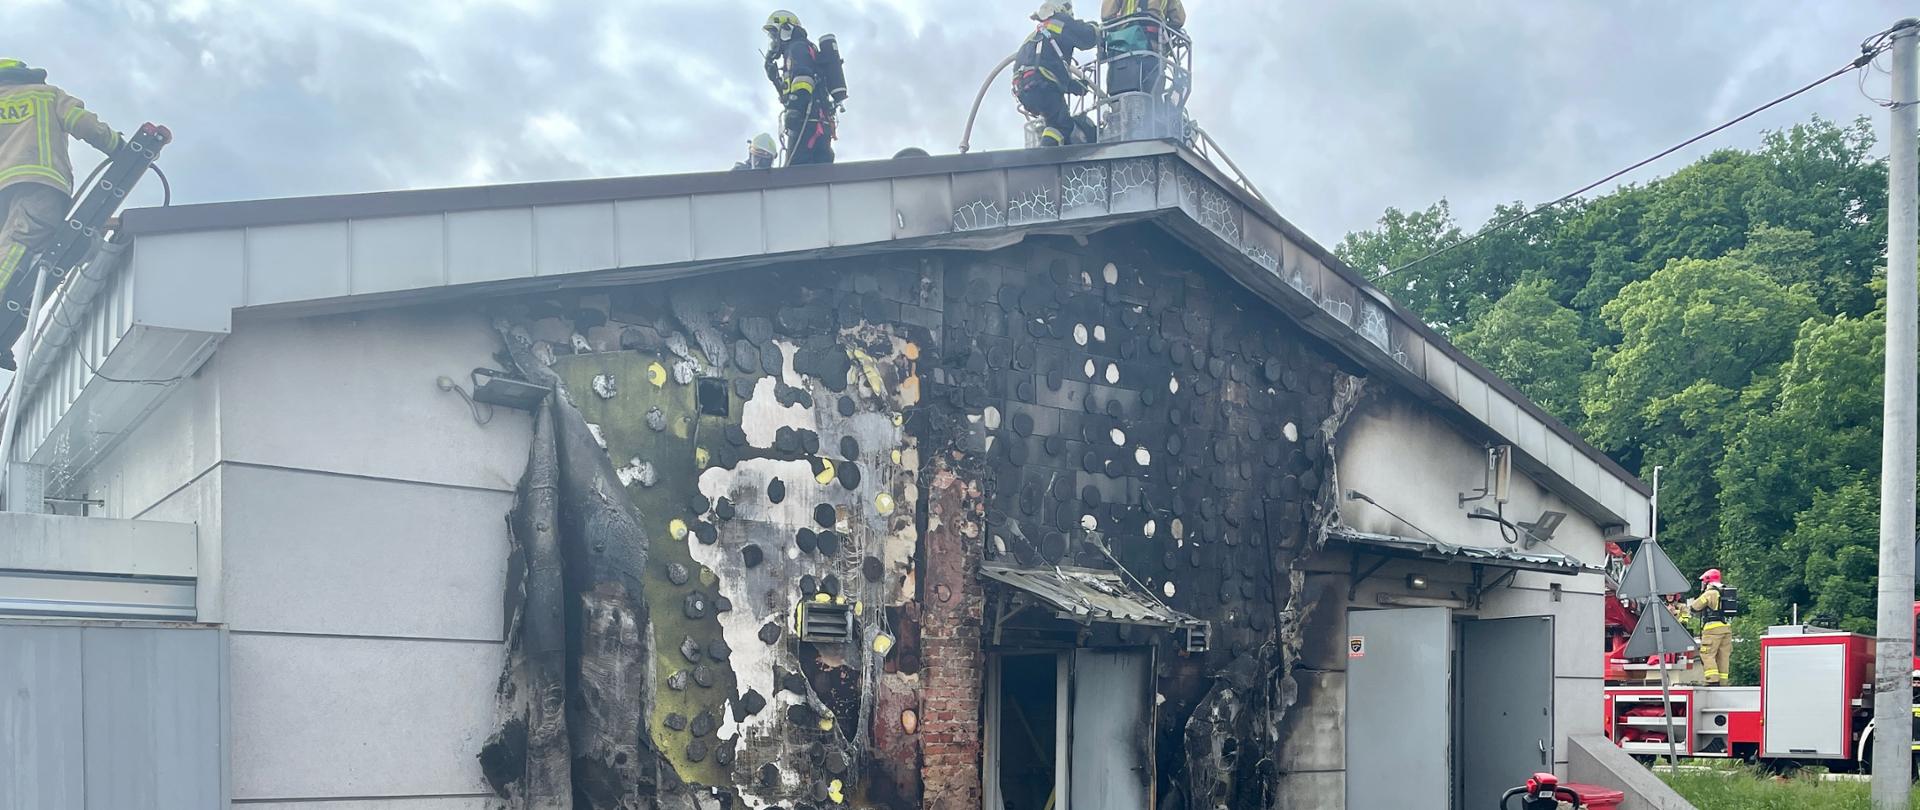 widok nadpalonej elewacji budynku dyskontu spożywczego, na dachu pracujący strażacy